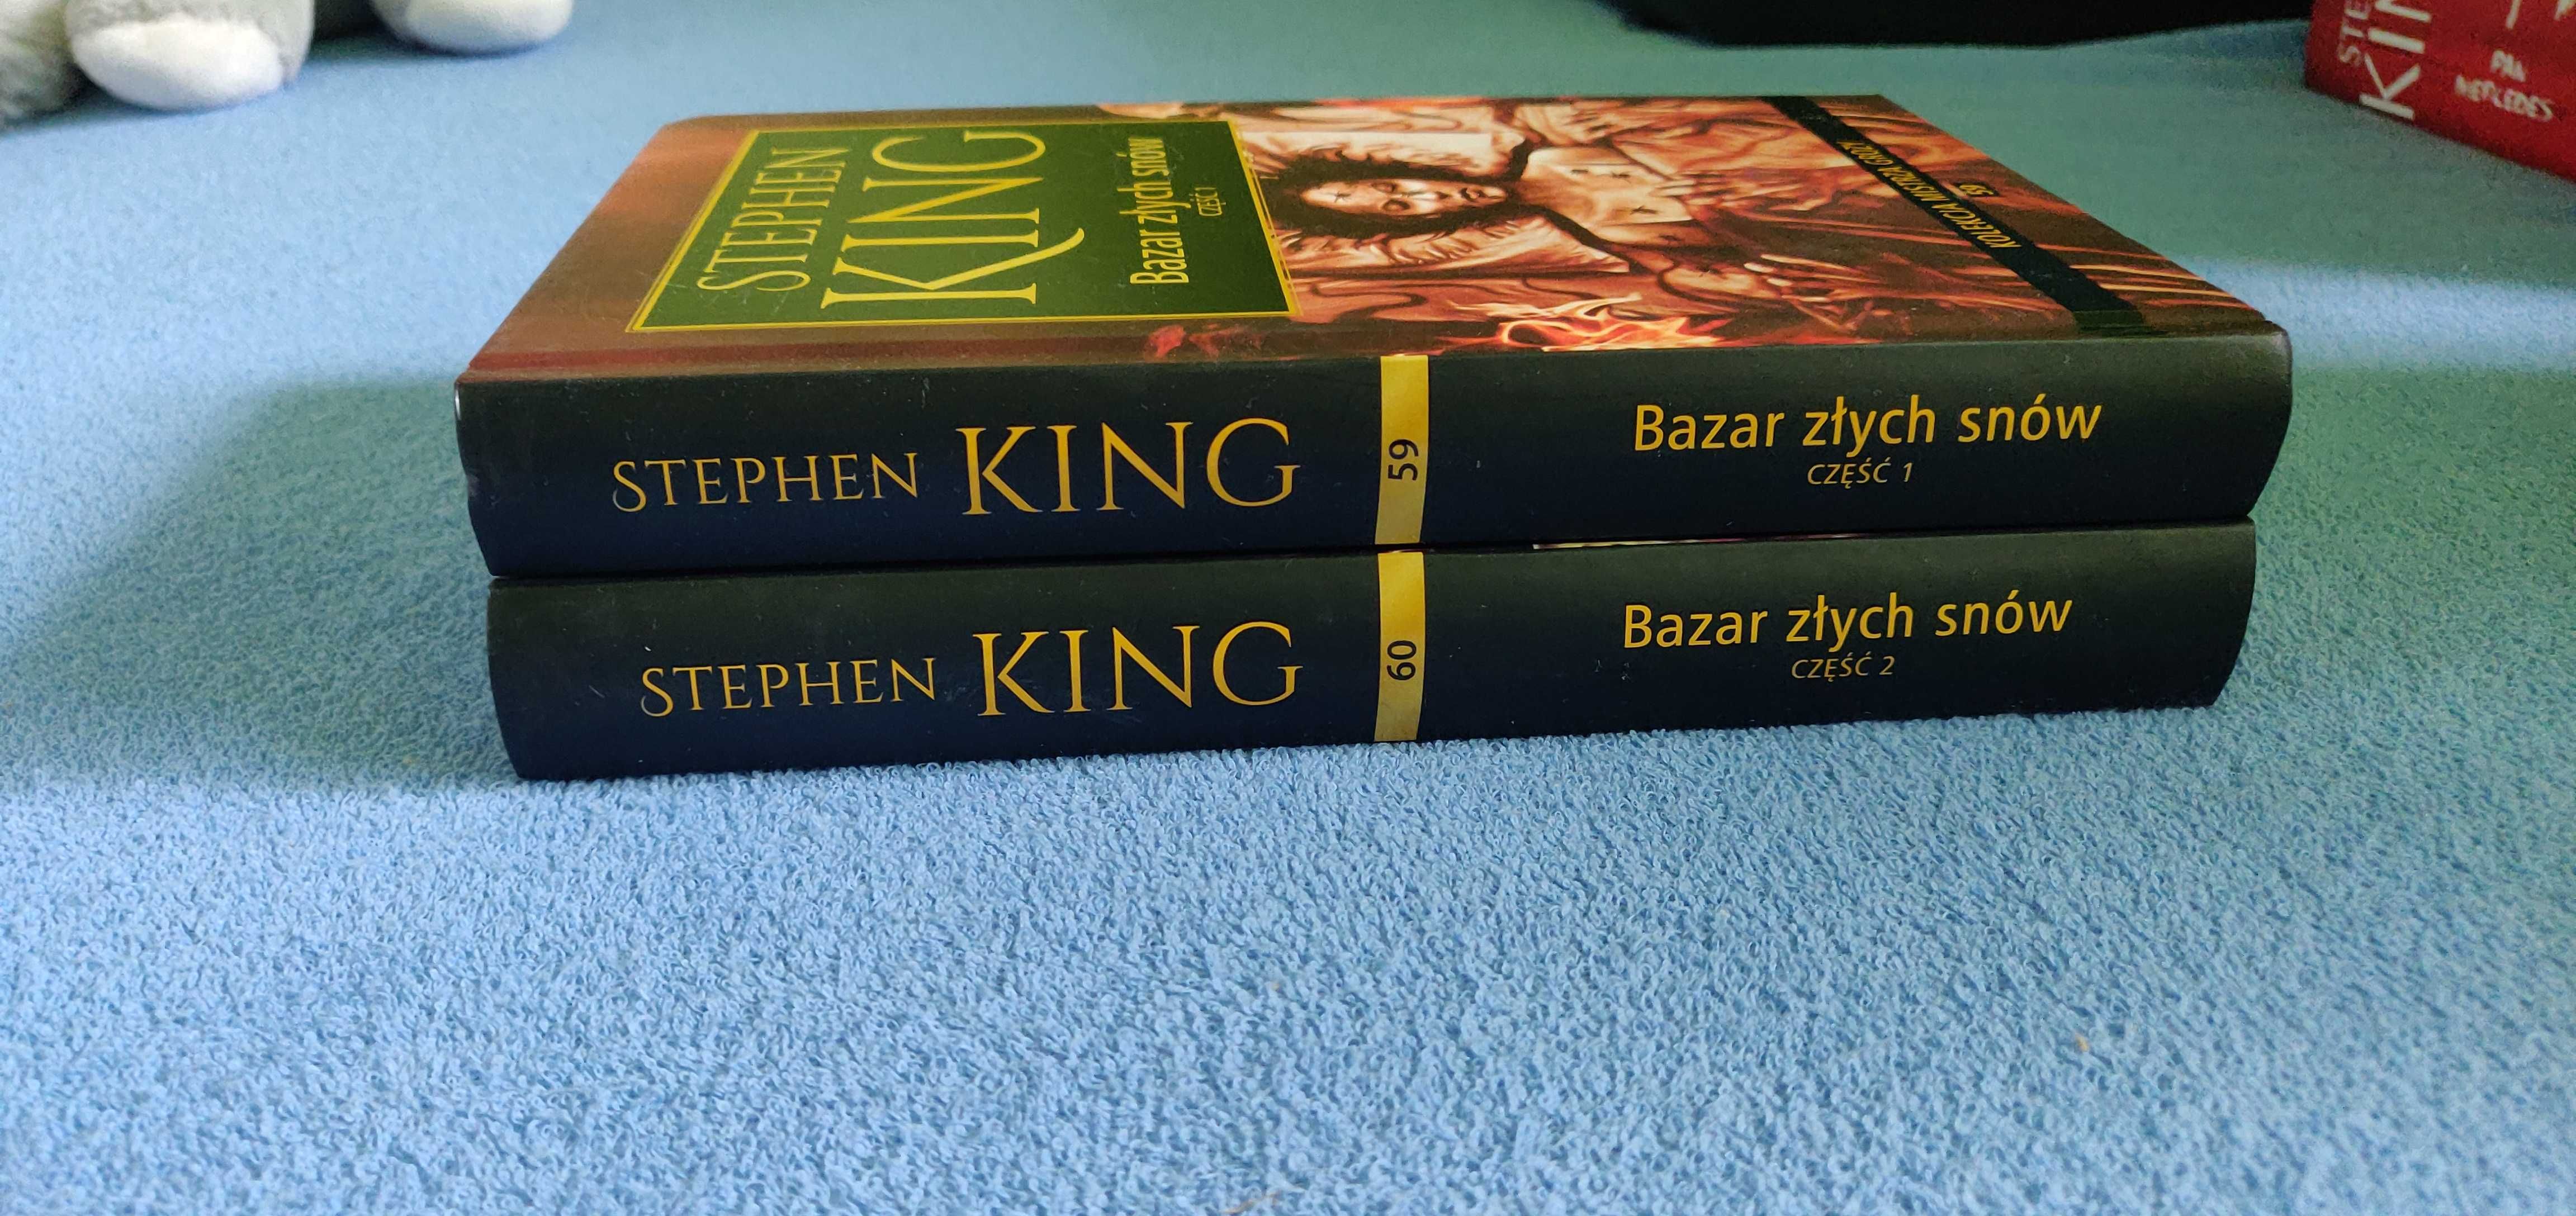 Stephen King	- Bazar złych snów